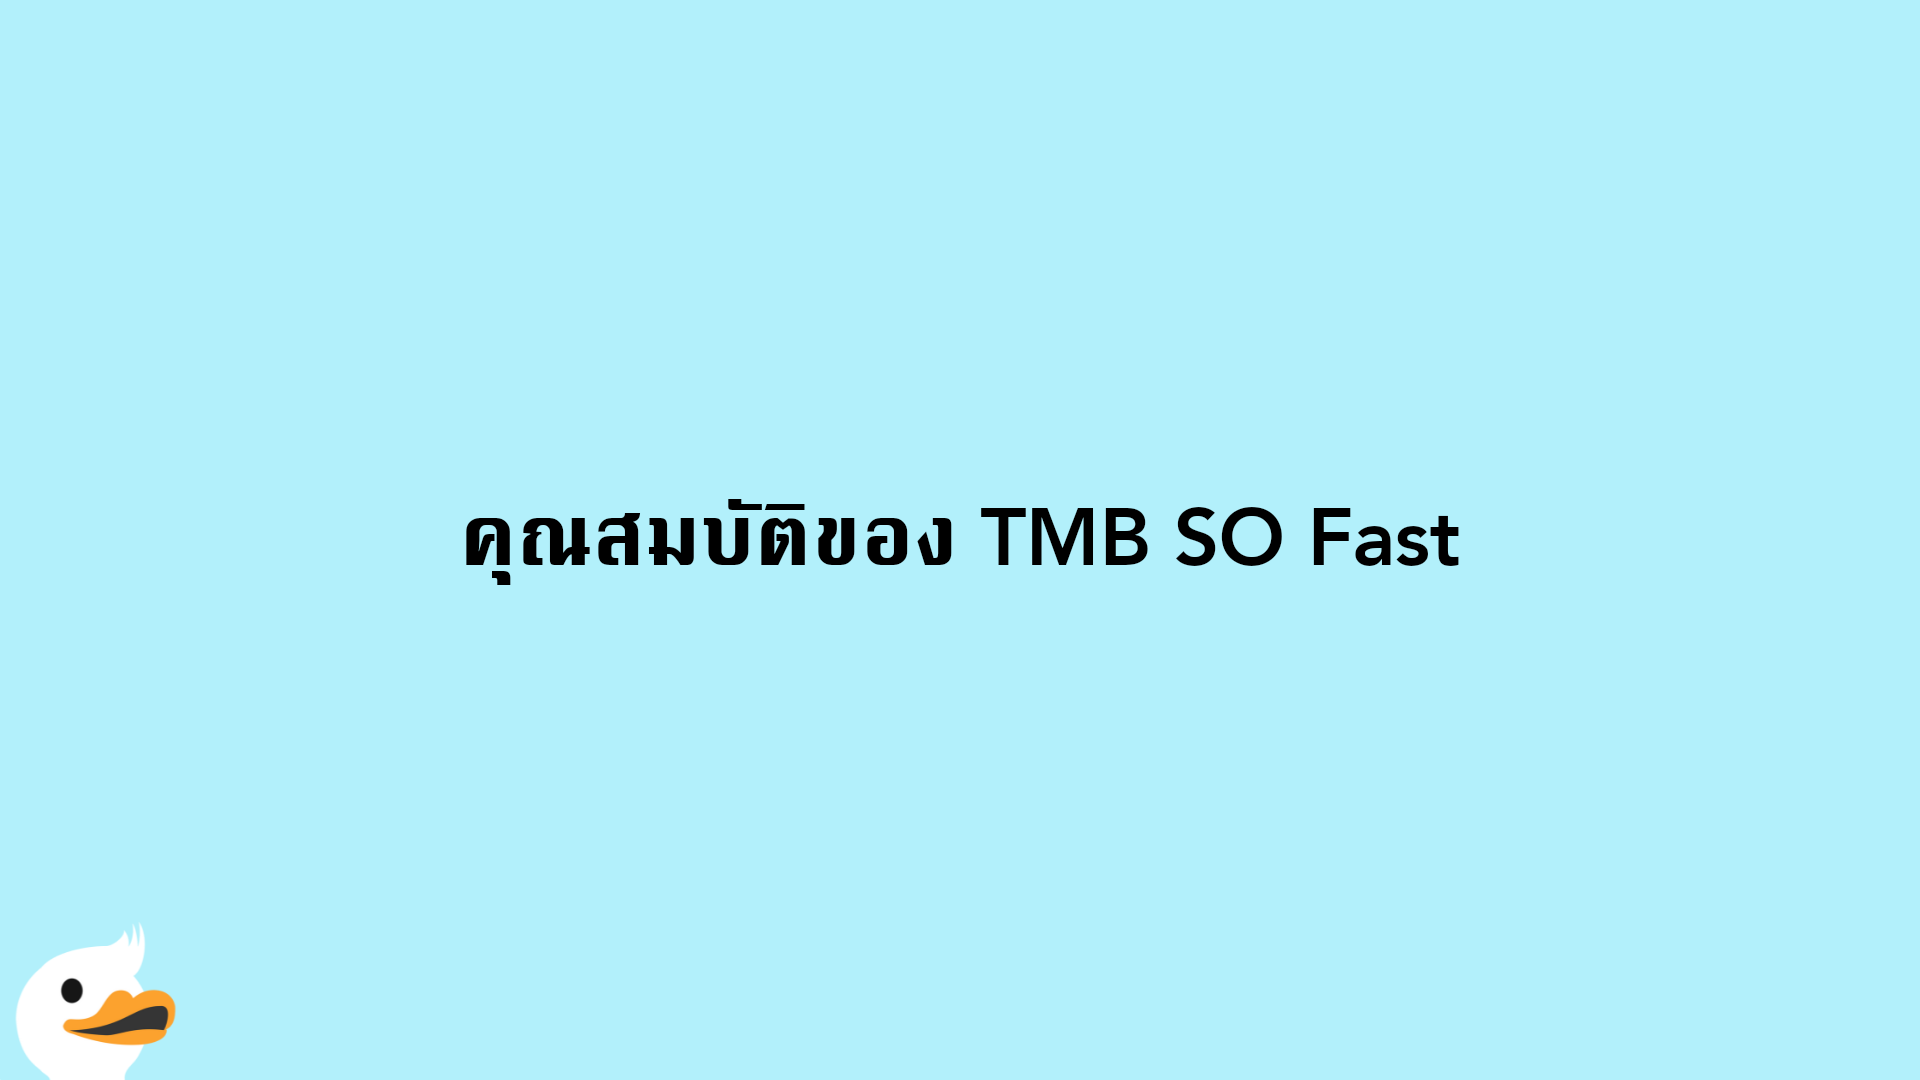 คุณสมบัติของ TMB SO Fast